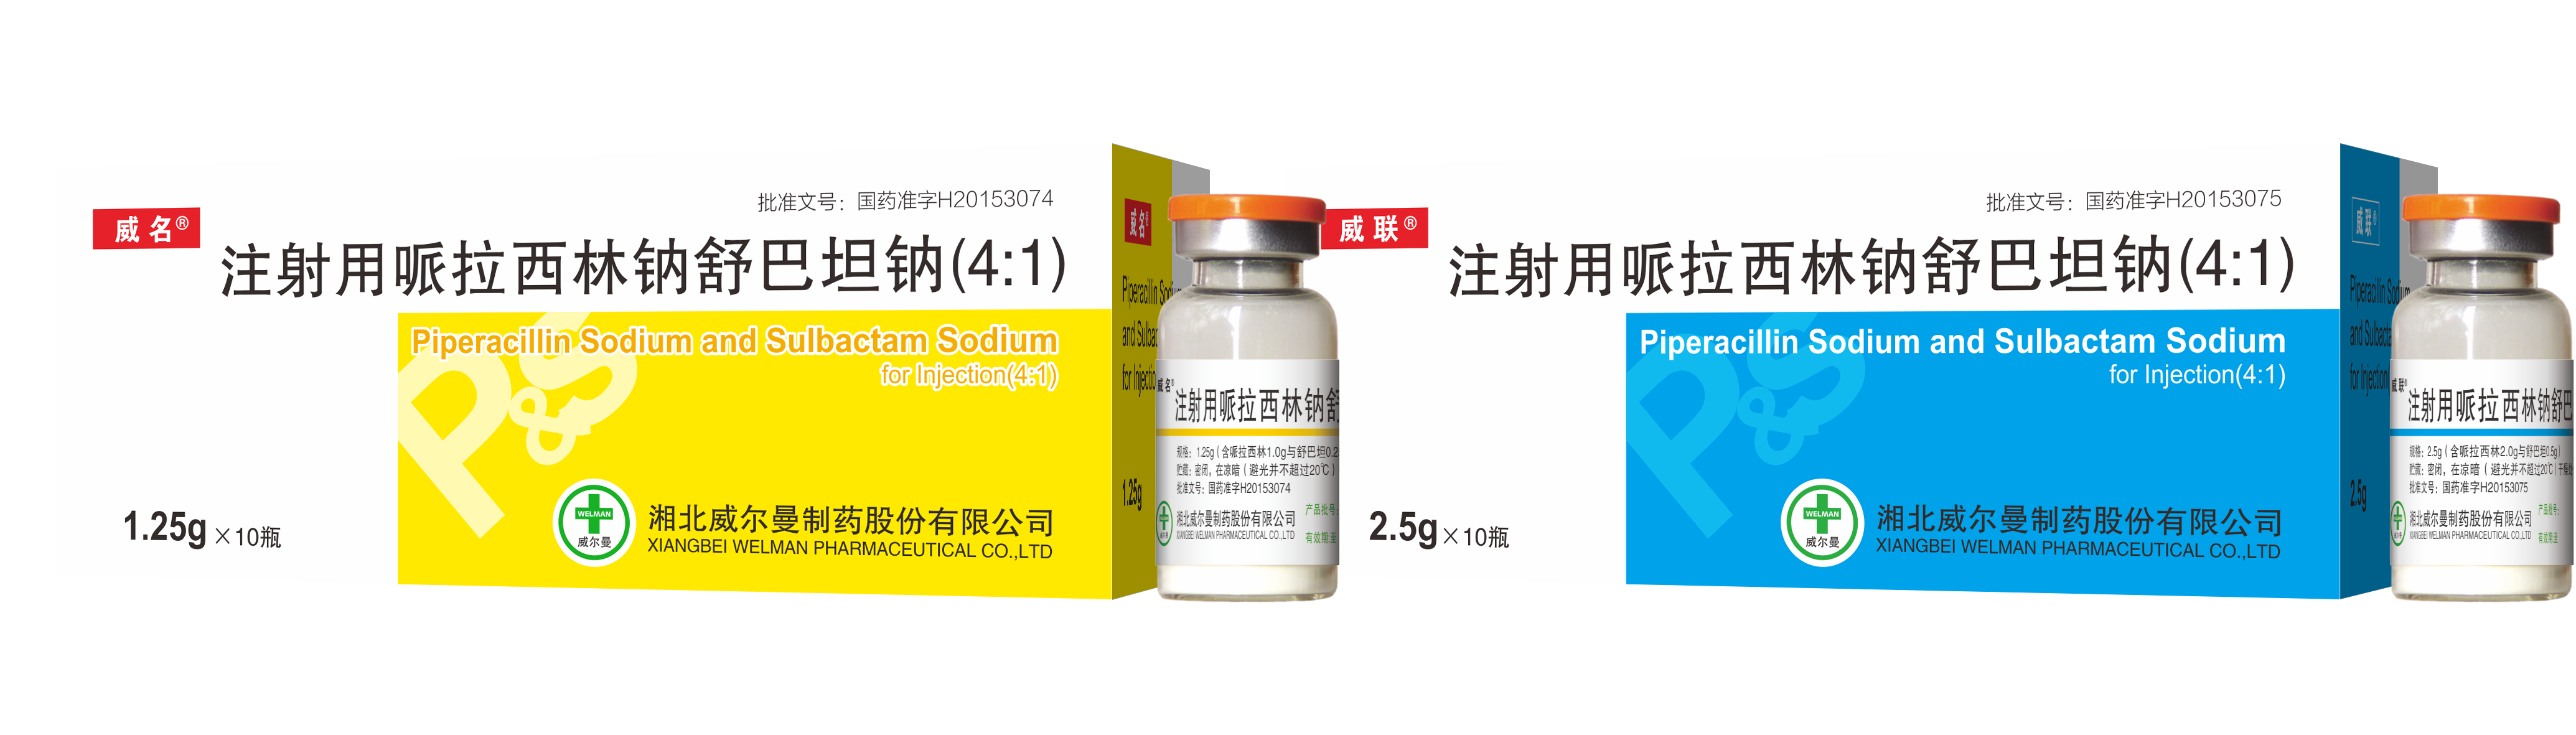 注射用哌拉西林钠他唑巴坦钠（8:1）-抗感染用药-产品中心-通用三洋